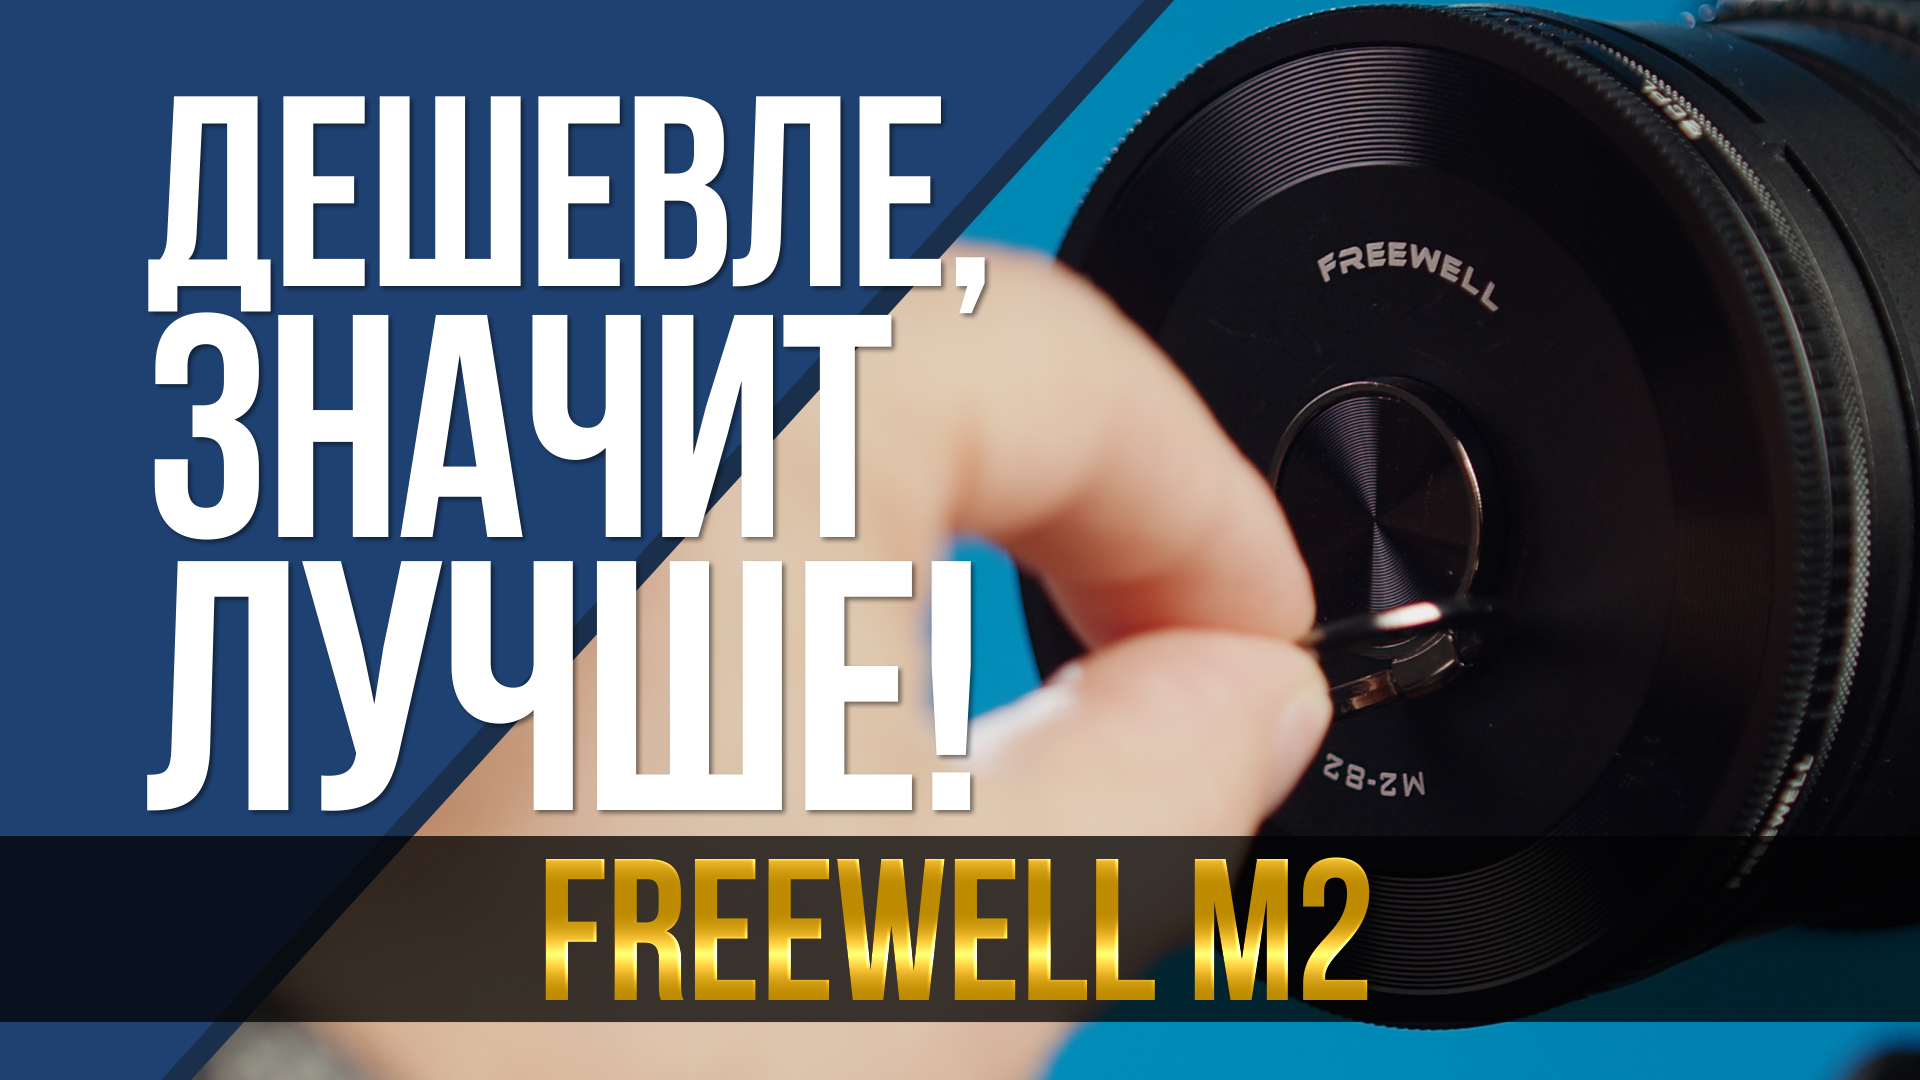 Дешевле, значит лучше! Новый комплект нейтральных фильтров FreeWell M2.